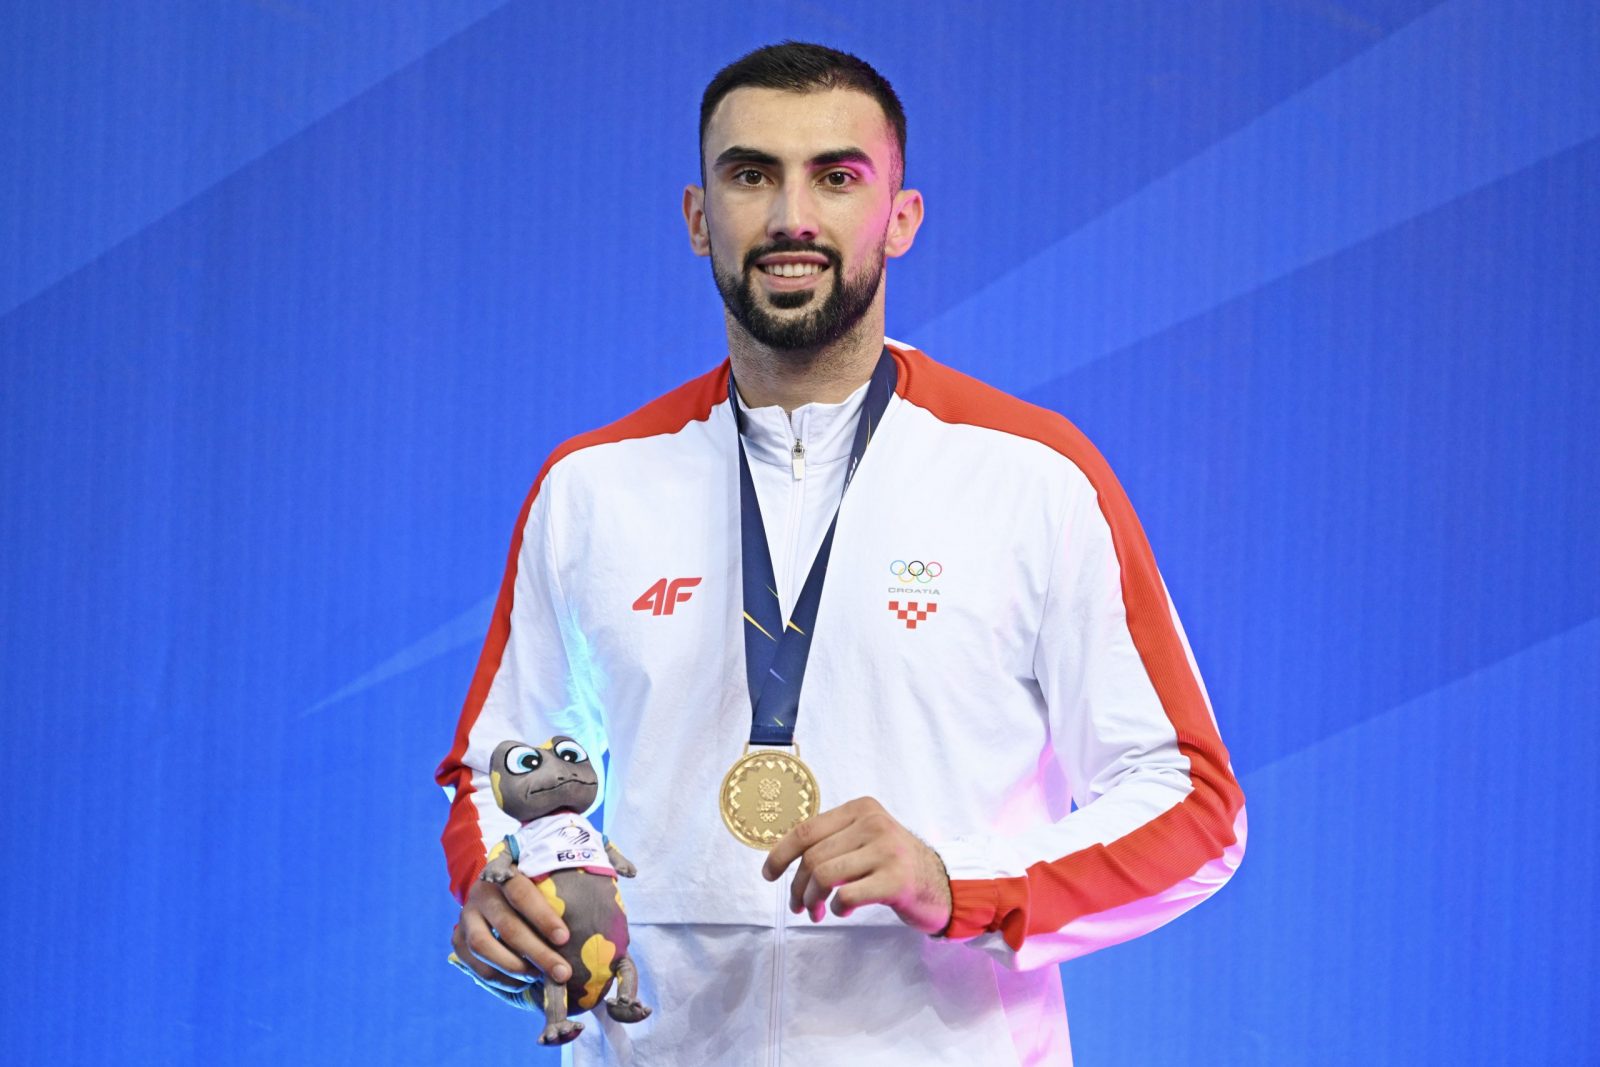 Hrvatski karataš Anđelo Kvesić osvojio je zlatnu medalju u kategoriji iznad 84 kg na Europskim igrama u Poljskoj.
Europski prvak je u finalu pobijedio Turčina Fatiha Sena sa 5-0.
foto HINA/ HOO/ Slobodan Kadić/ ds